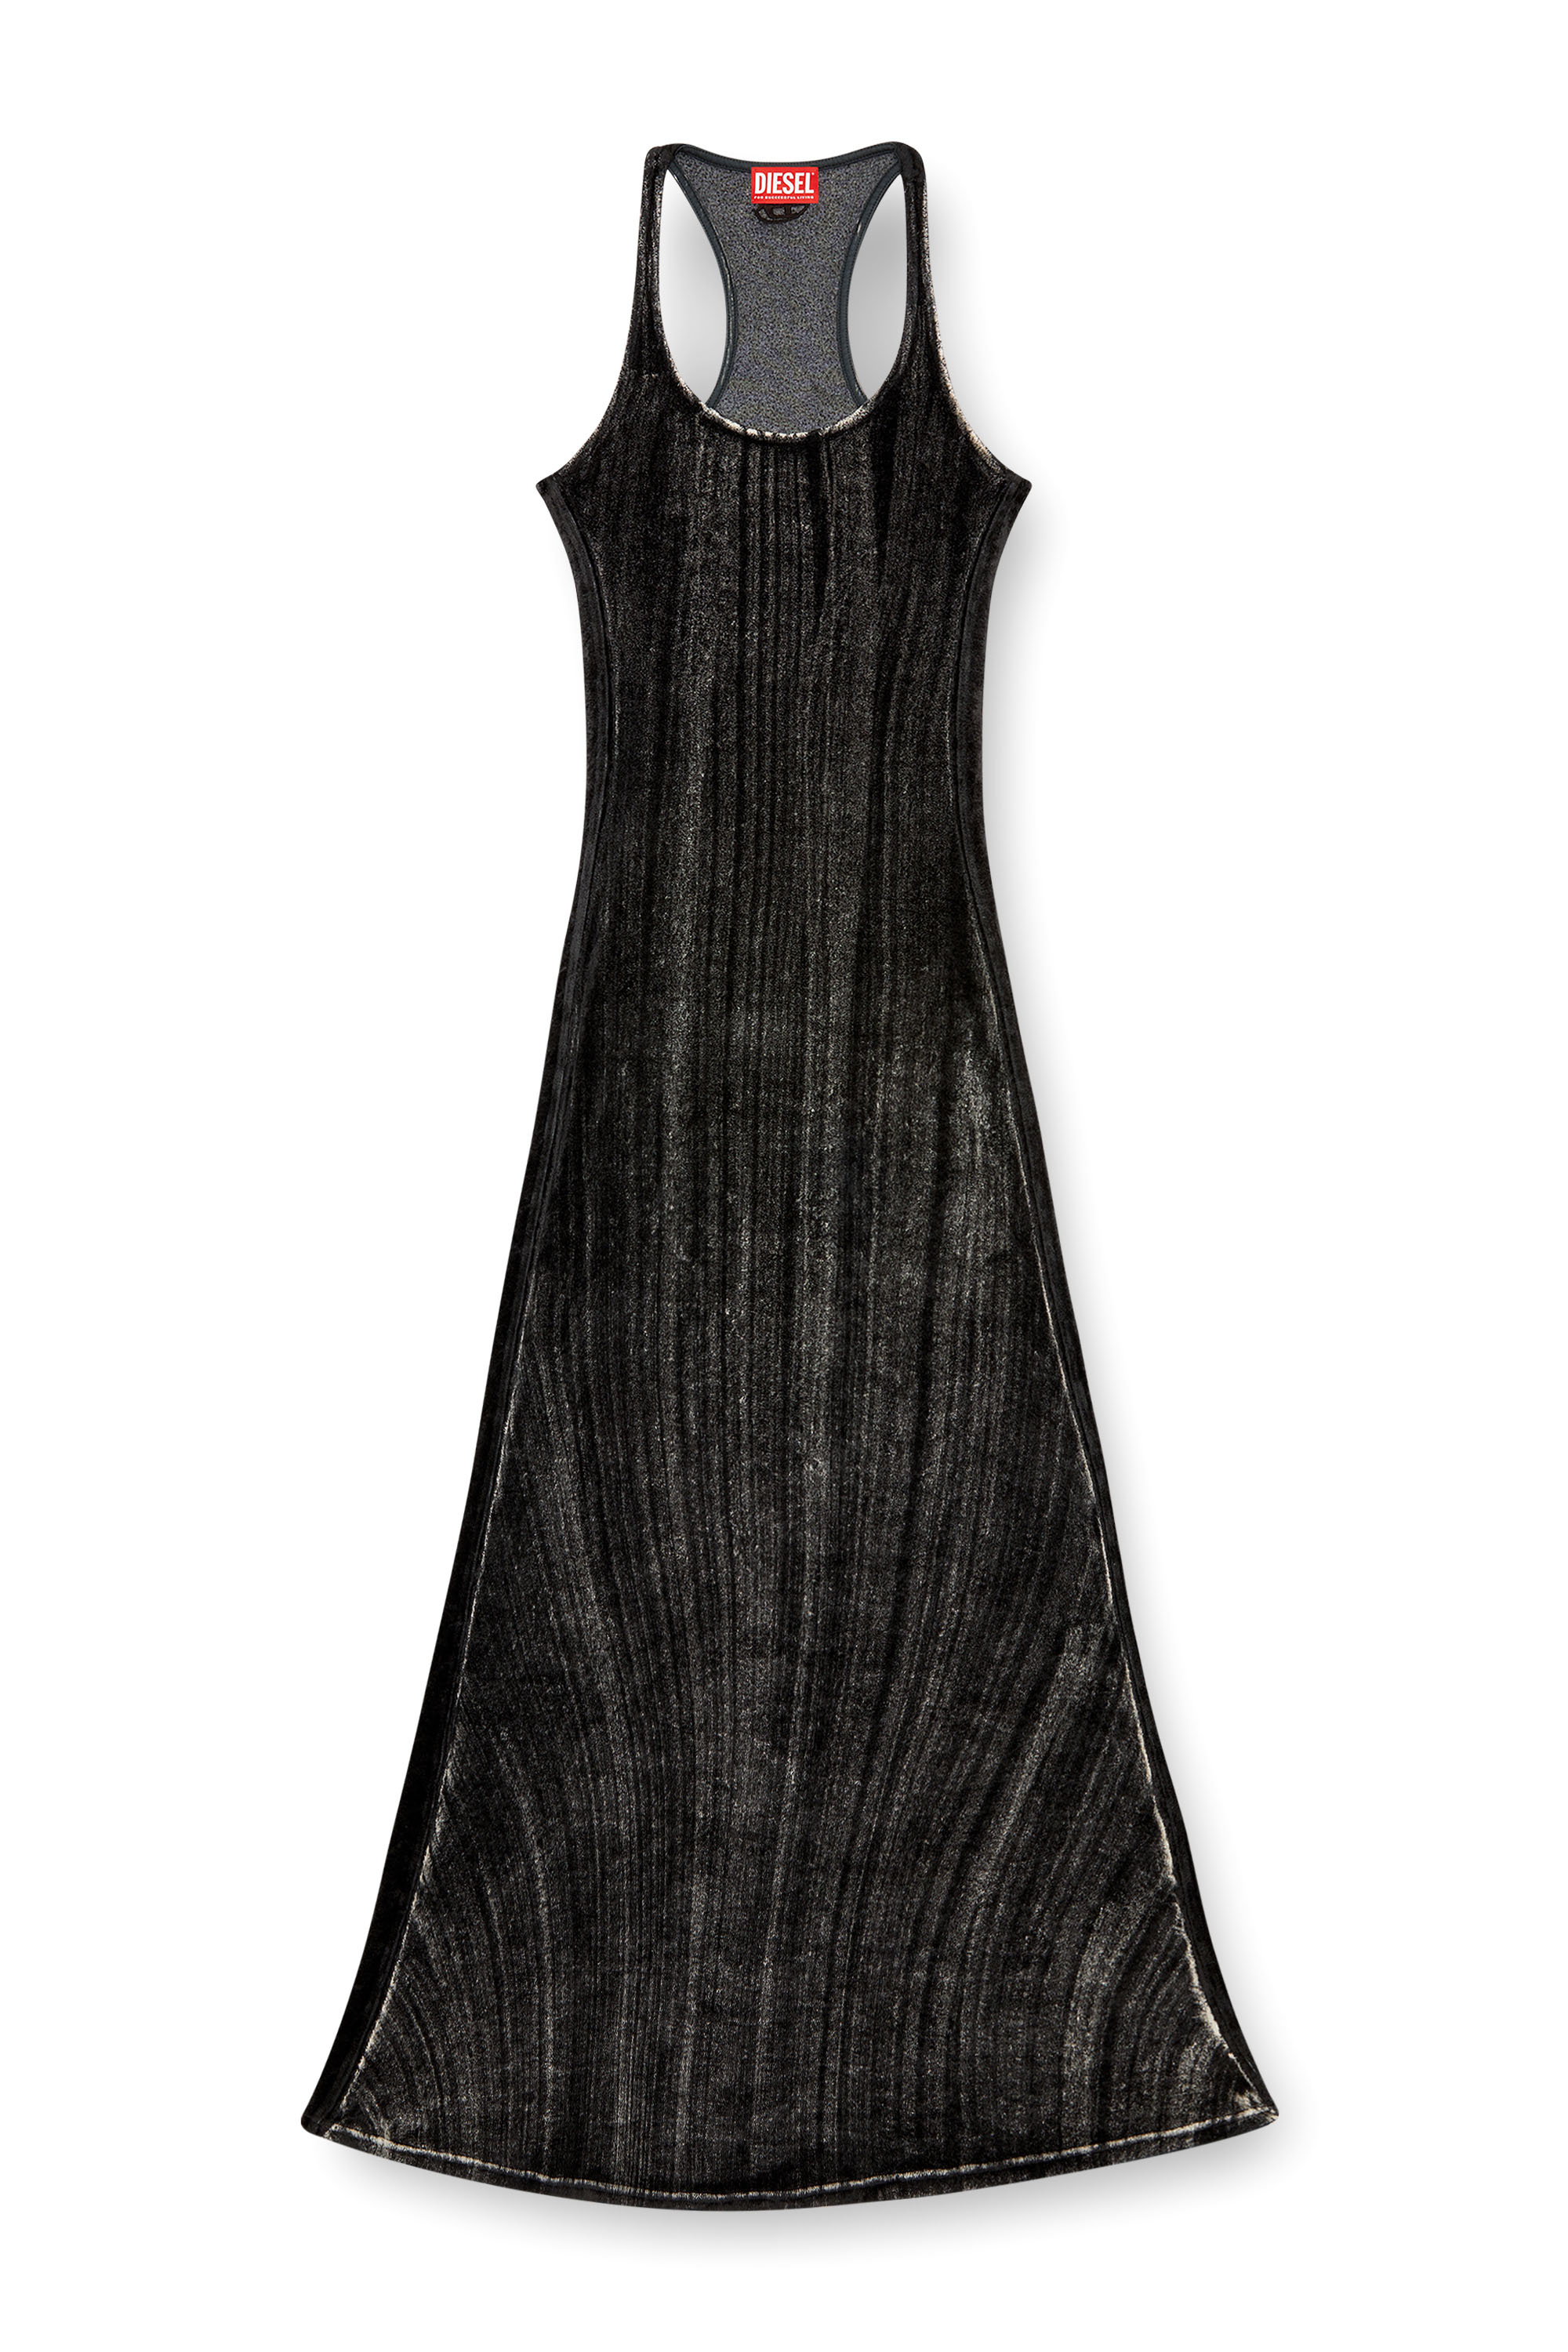 Diesel - D-VOG, Mujer Vestido largo de chenilla con espalda deportiva in Negro - Image 1